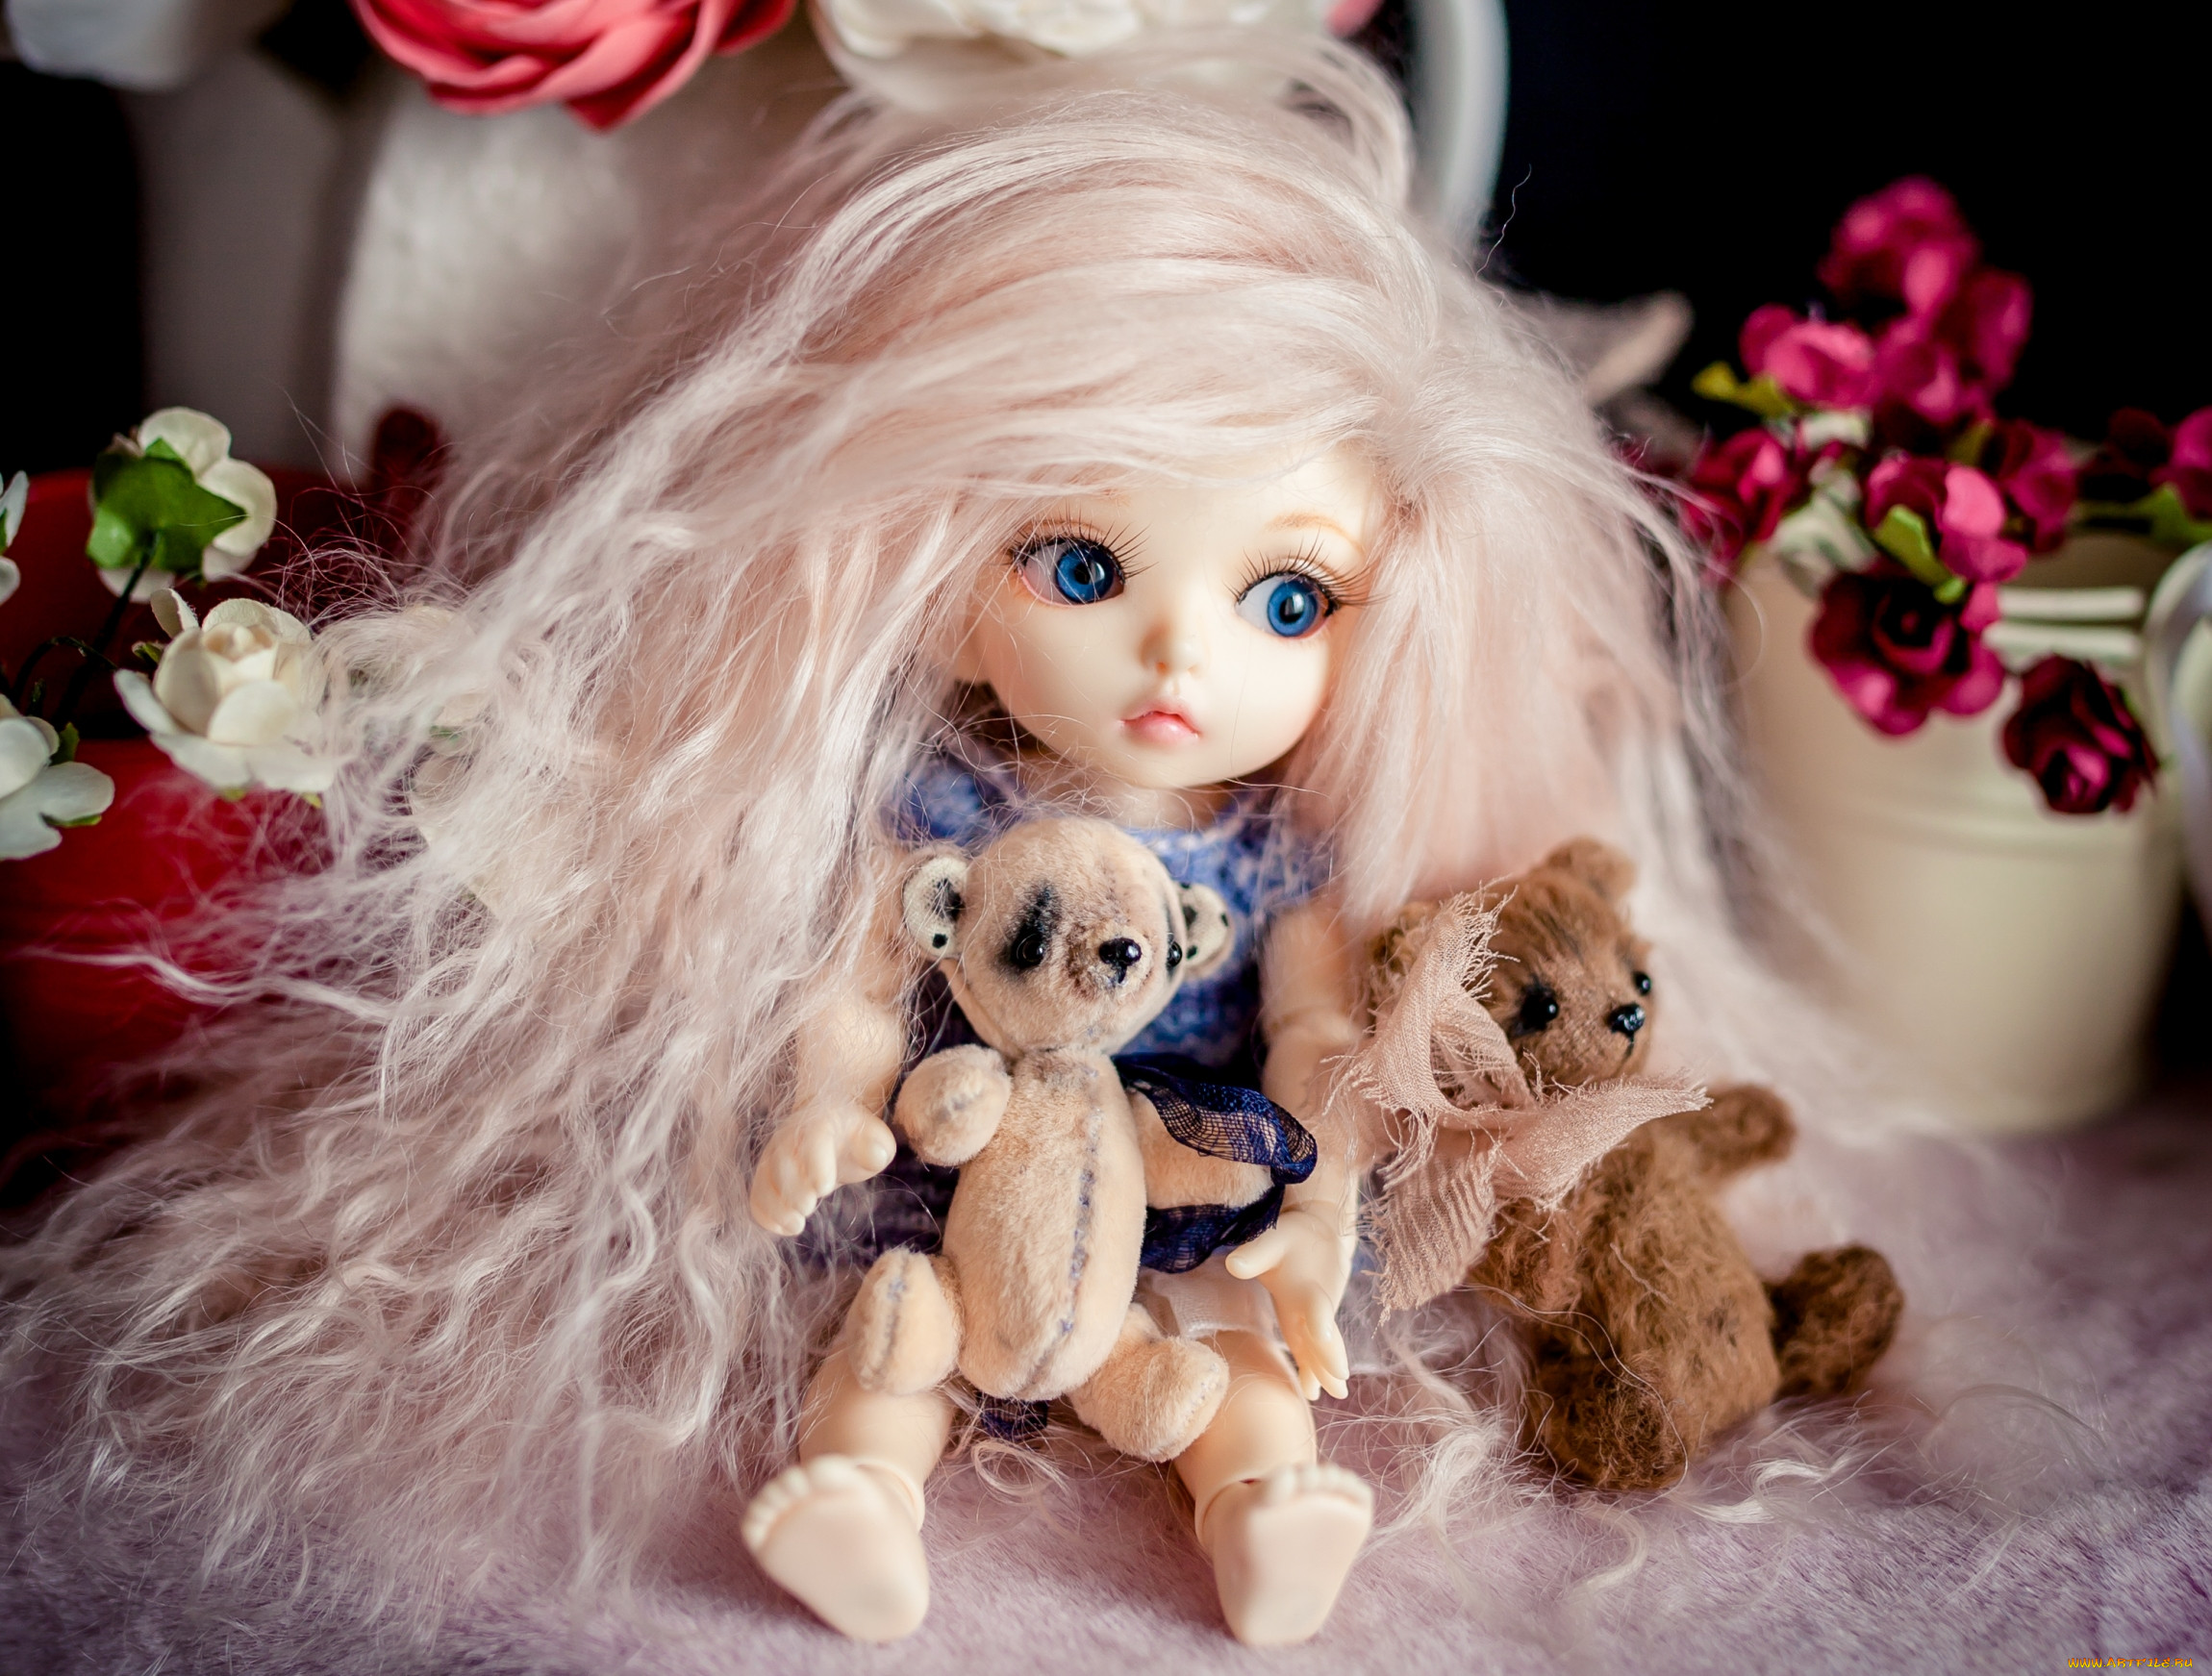 Покажи самых красивых кукол. Красивые куклы. Самые красивые куклы. Красивые куклы для девочек. Самые красивые игрушки куклы.